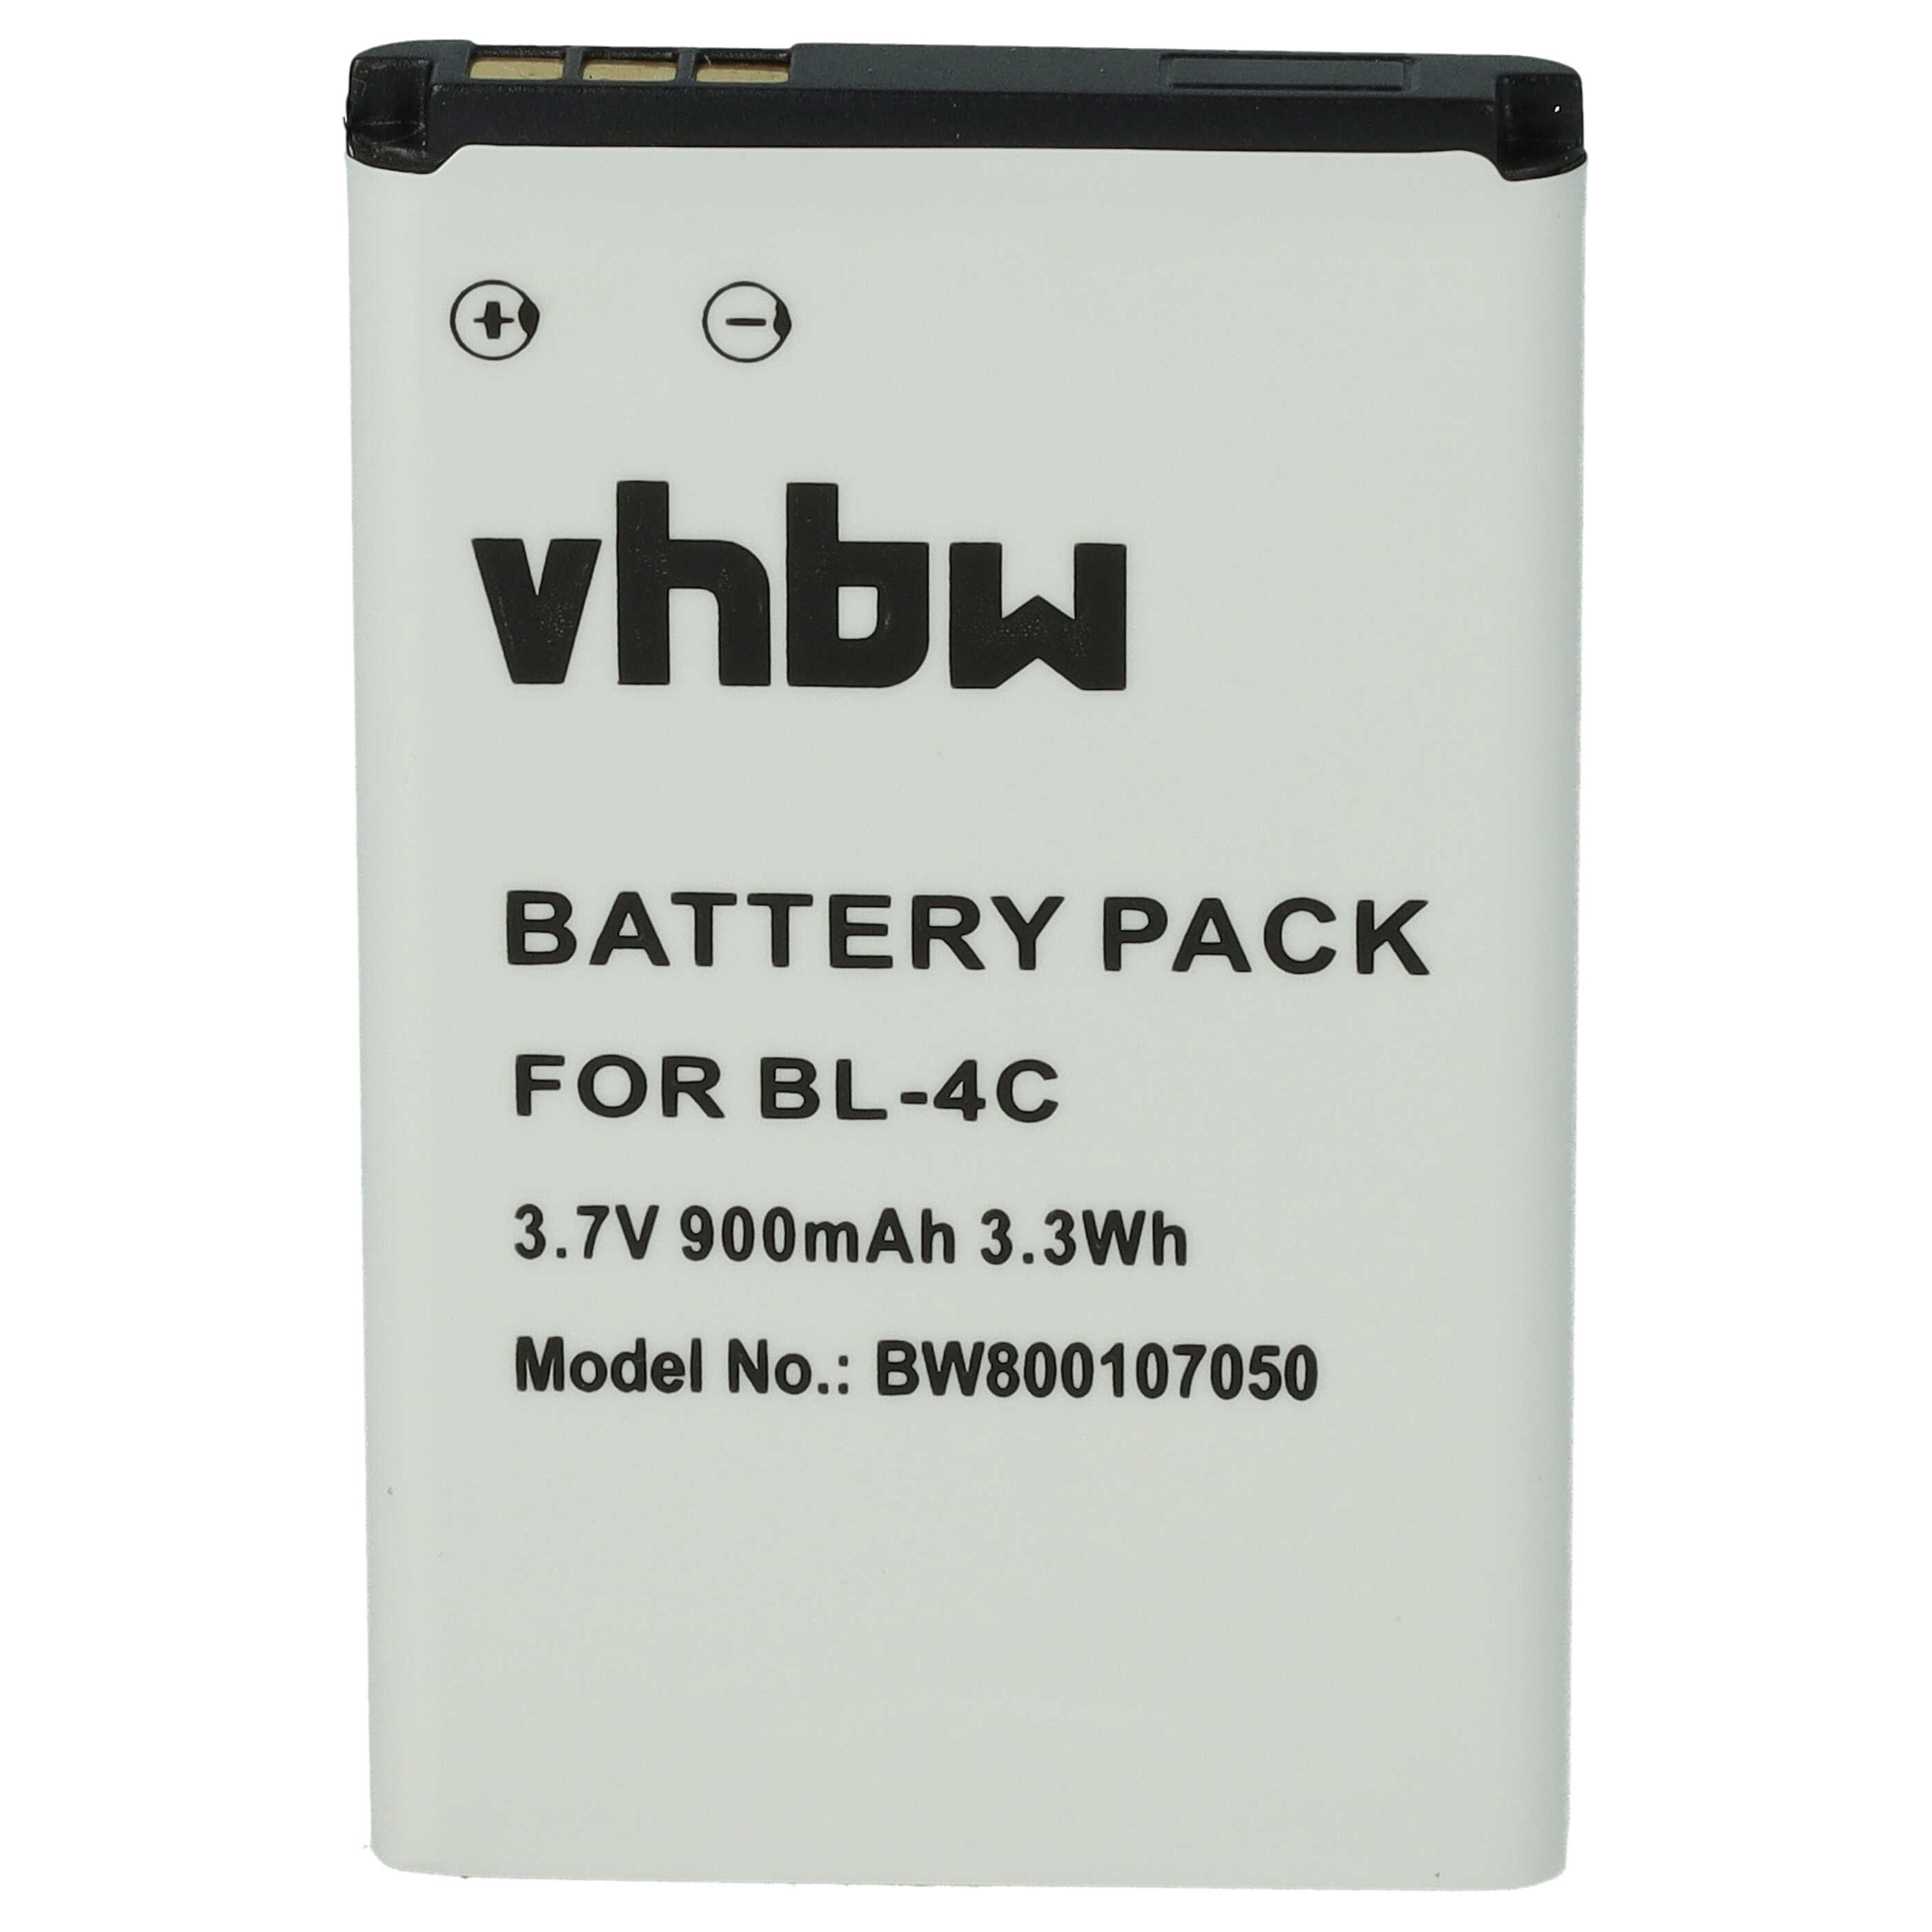 Batterie remplace Snom 00001595, 02-109457, 60020438 pour téléphone - 900mAh 3,7V Li-ion